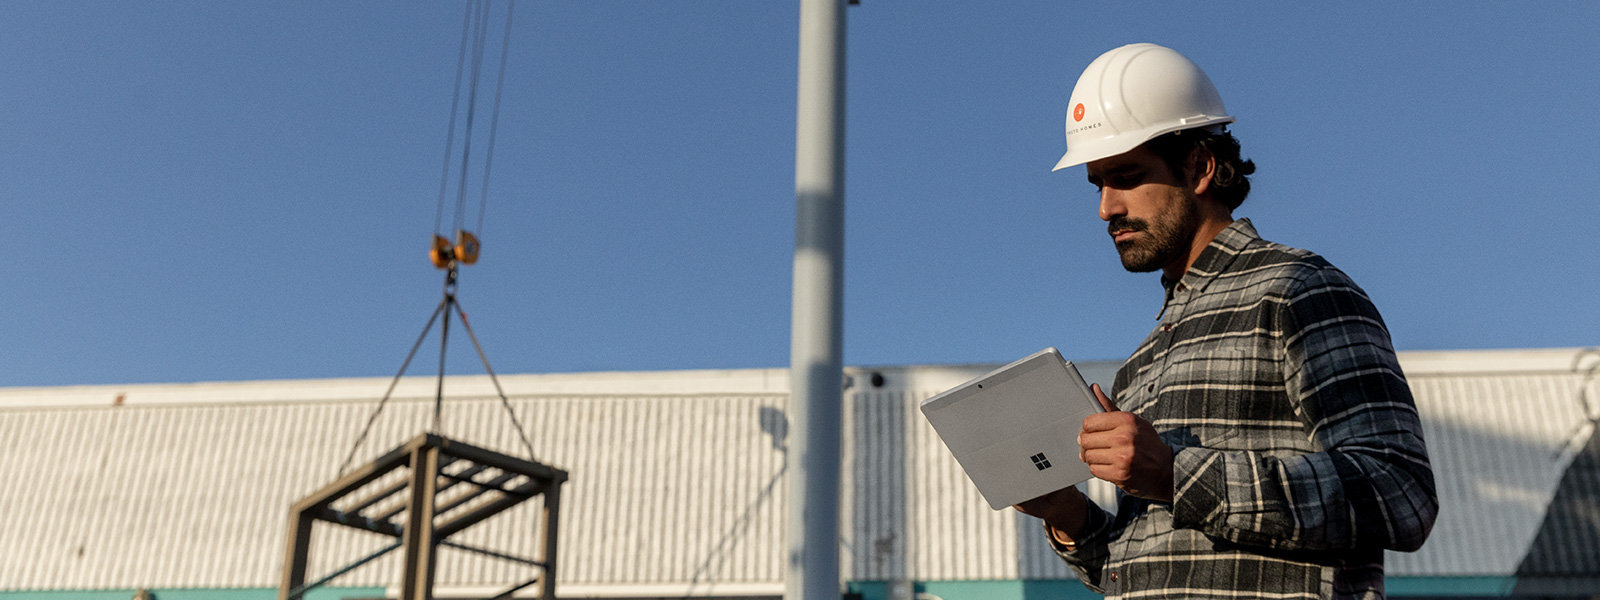 พนักงานที่สวมหมวกนิรภัยกำลังใช้งาน Surface Go 2 ในโรงงานอุตสาหกรรม